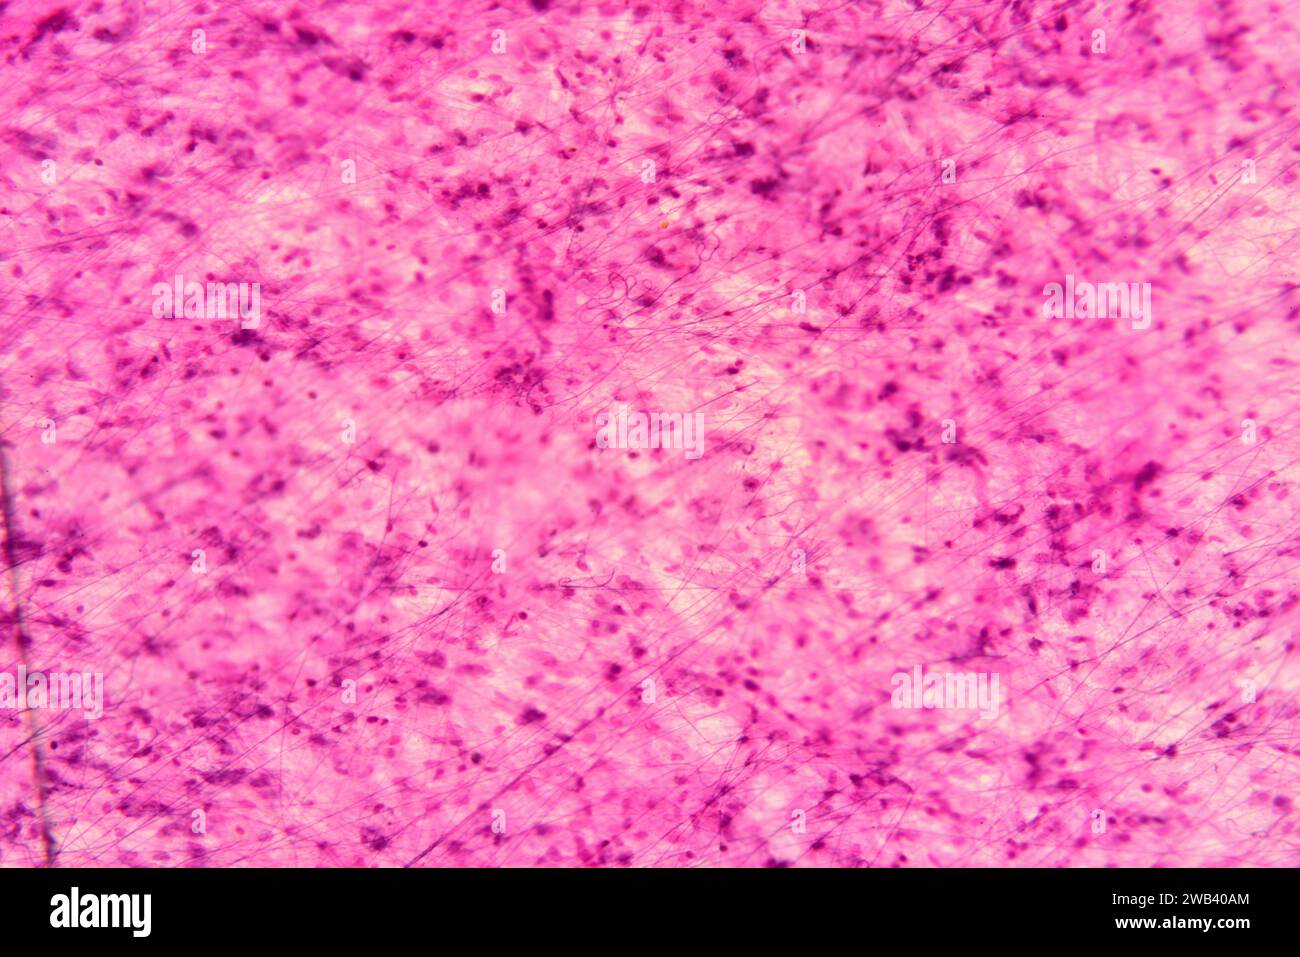 Tessuto connettivo sciolto umano con fibroblasti, fibre di collagene e matrice. X75 a 10 cm di larghezza. Foto Stock